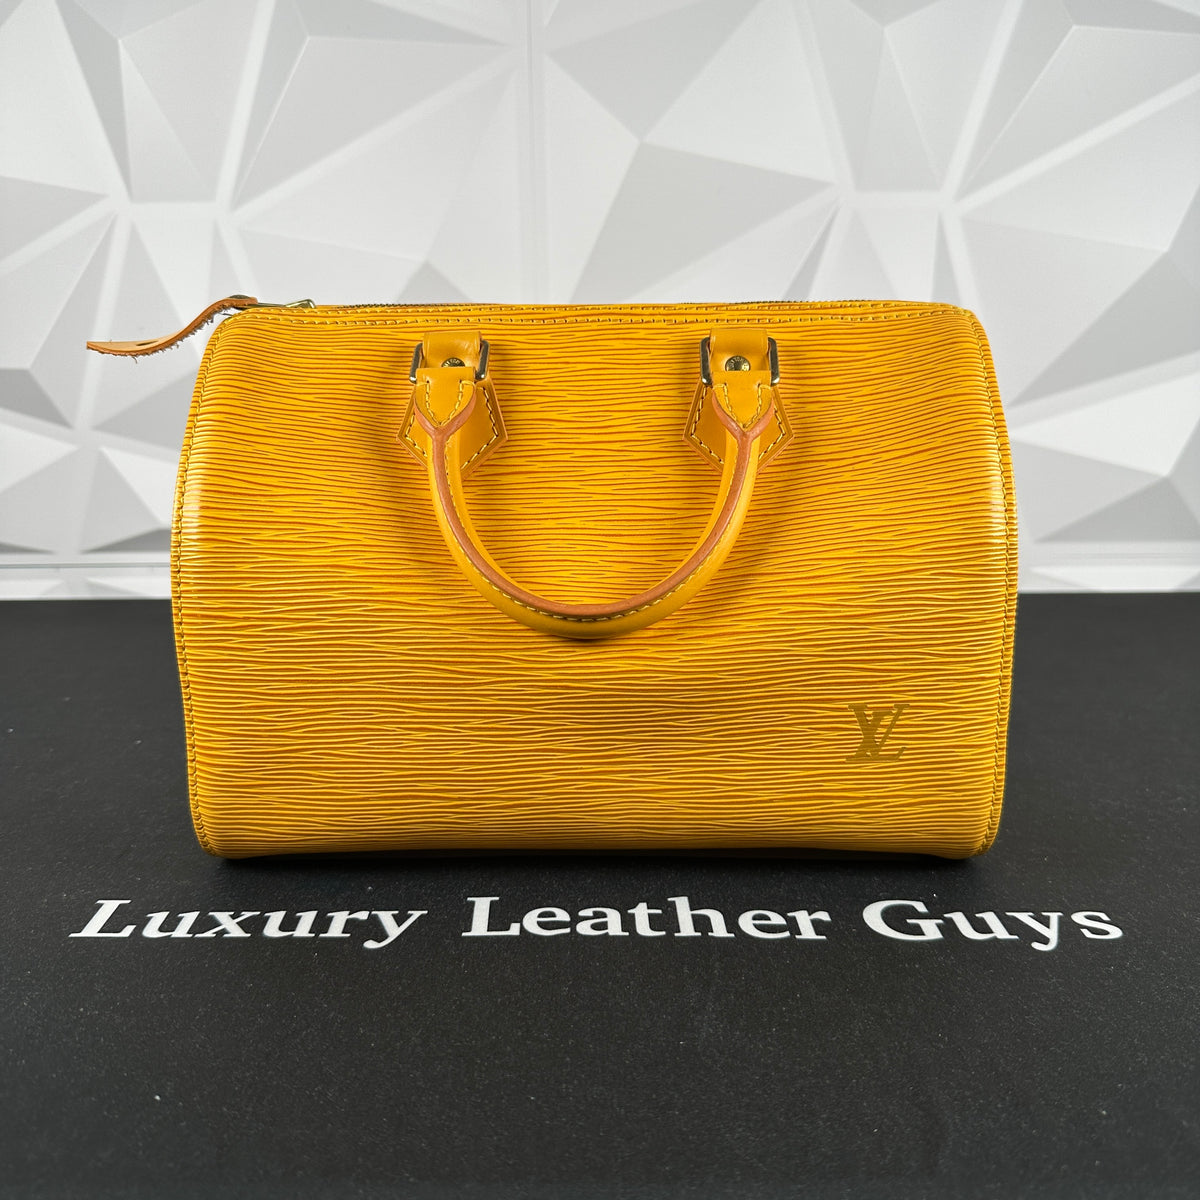 Louis Vuitton Speedy 25 EPI Leather